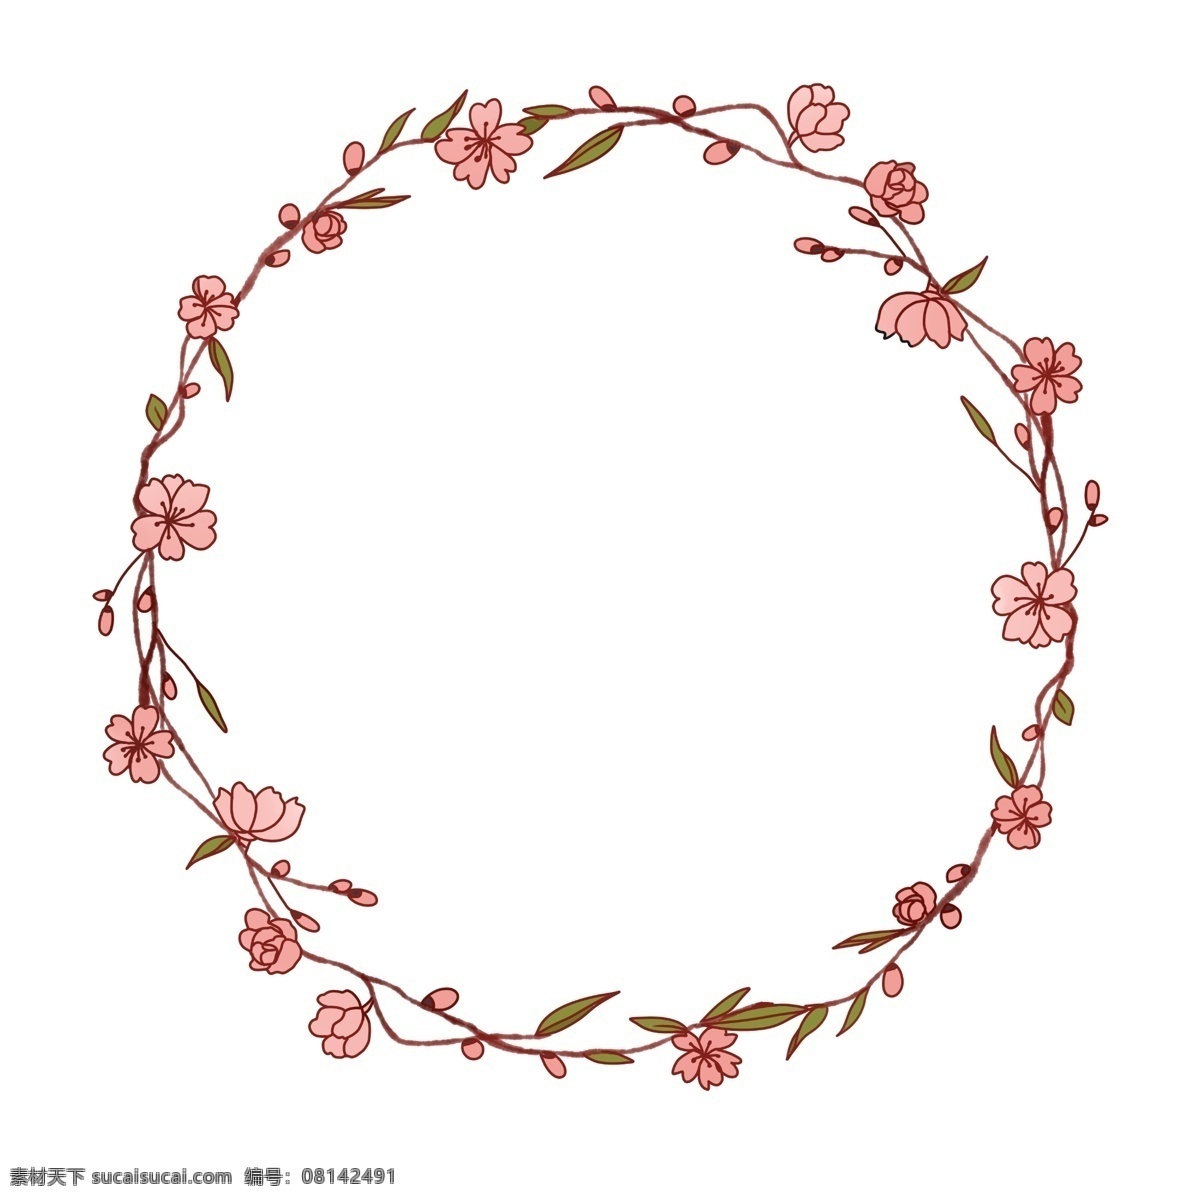 粉色 桃花 花环 插画 粉色的花环 粉色桃花 桃花花环 花环边框 圆形边框 植物装饰 花朵 花卉 花苞